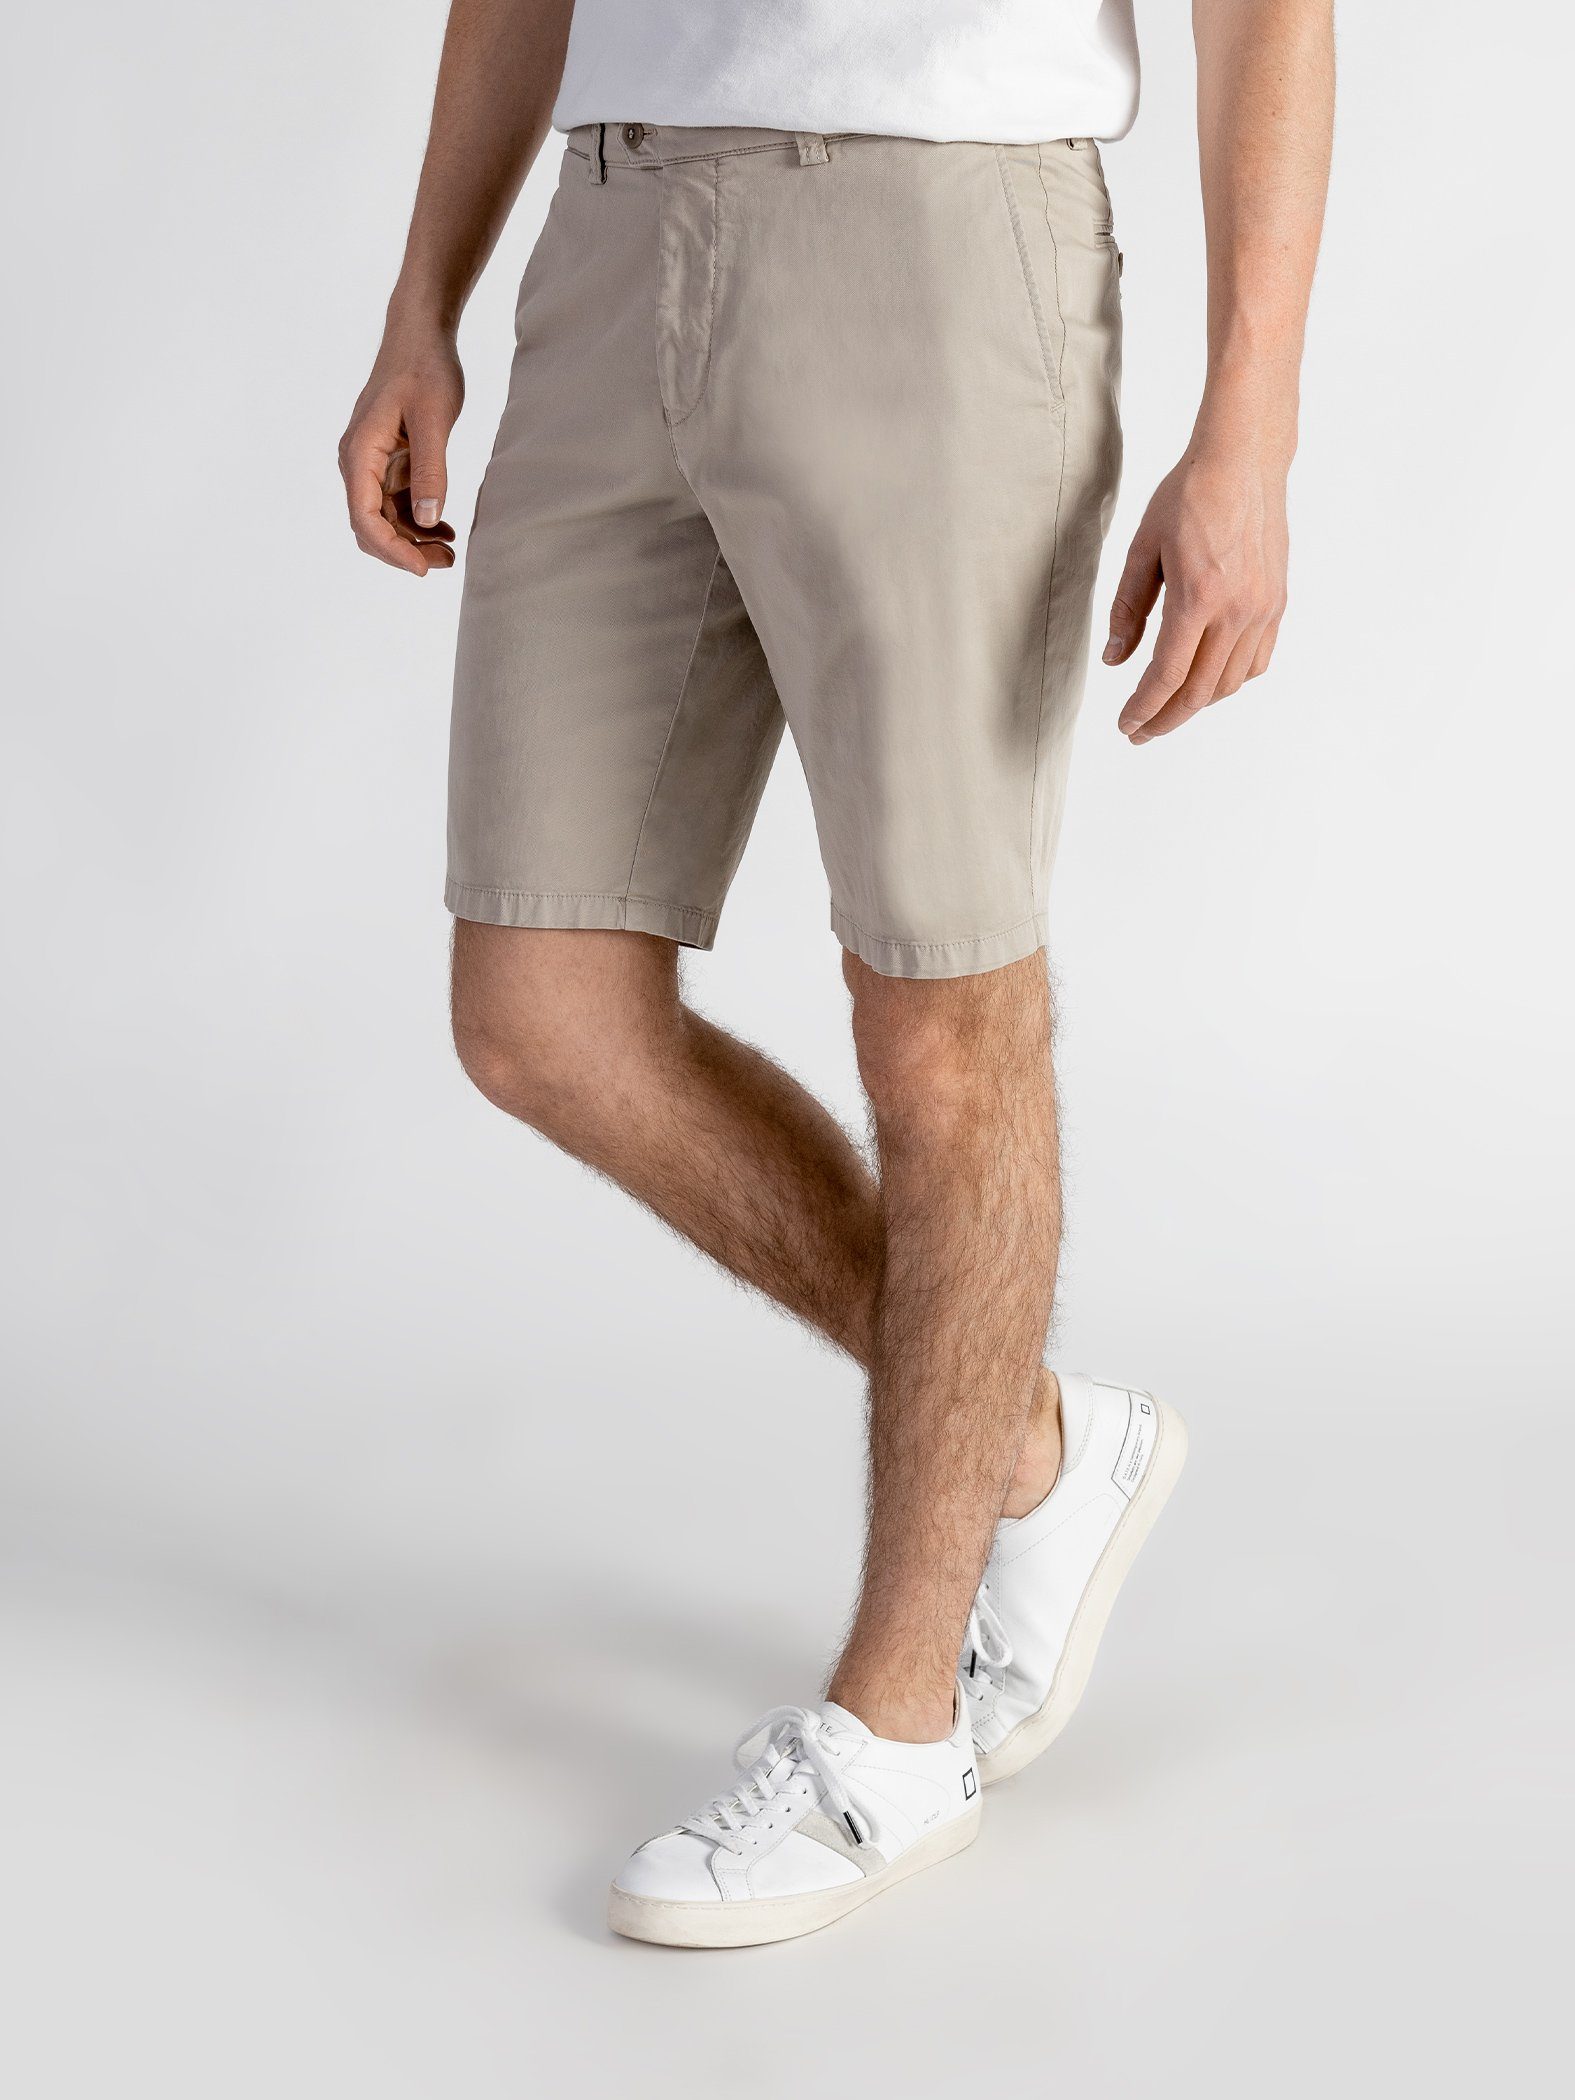 TwoMates Shorts Shorts mit GOTS-zertifiziert Farbauswahl, elastischem sandbeige Bund